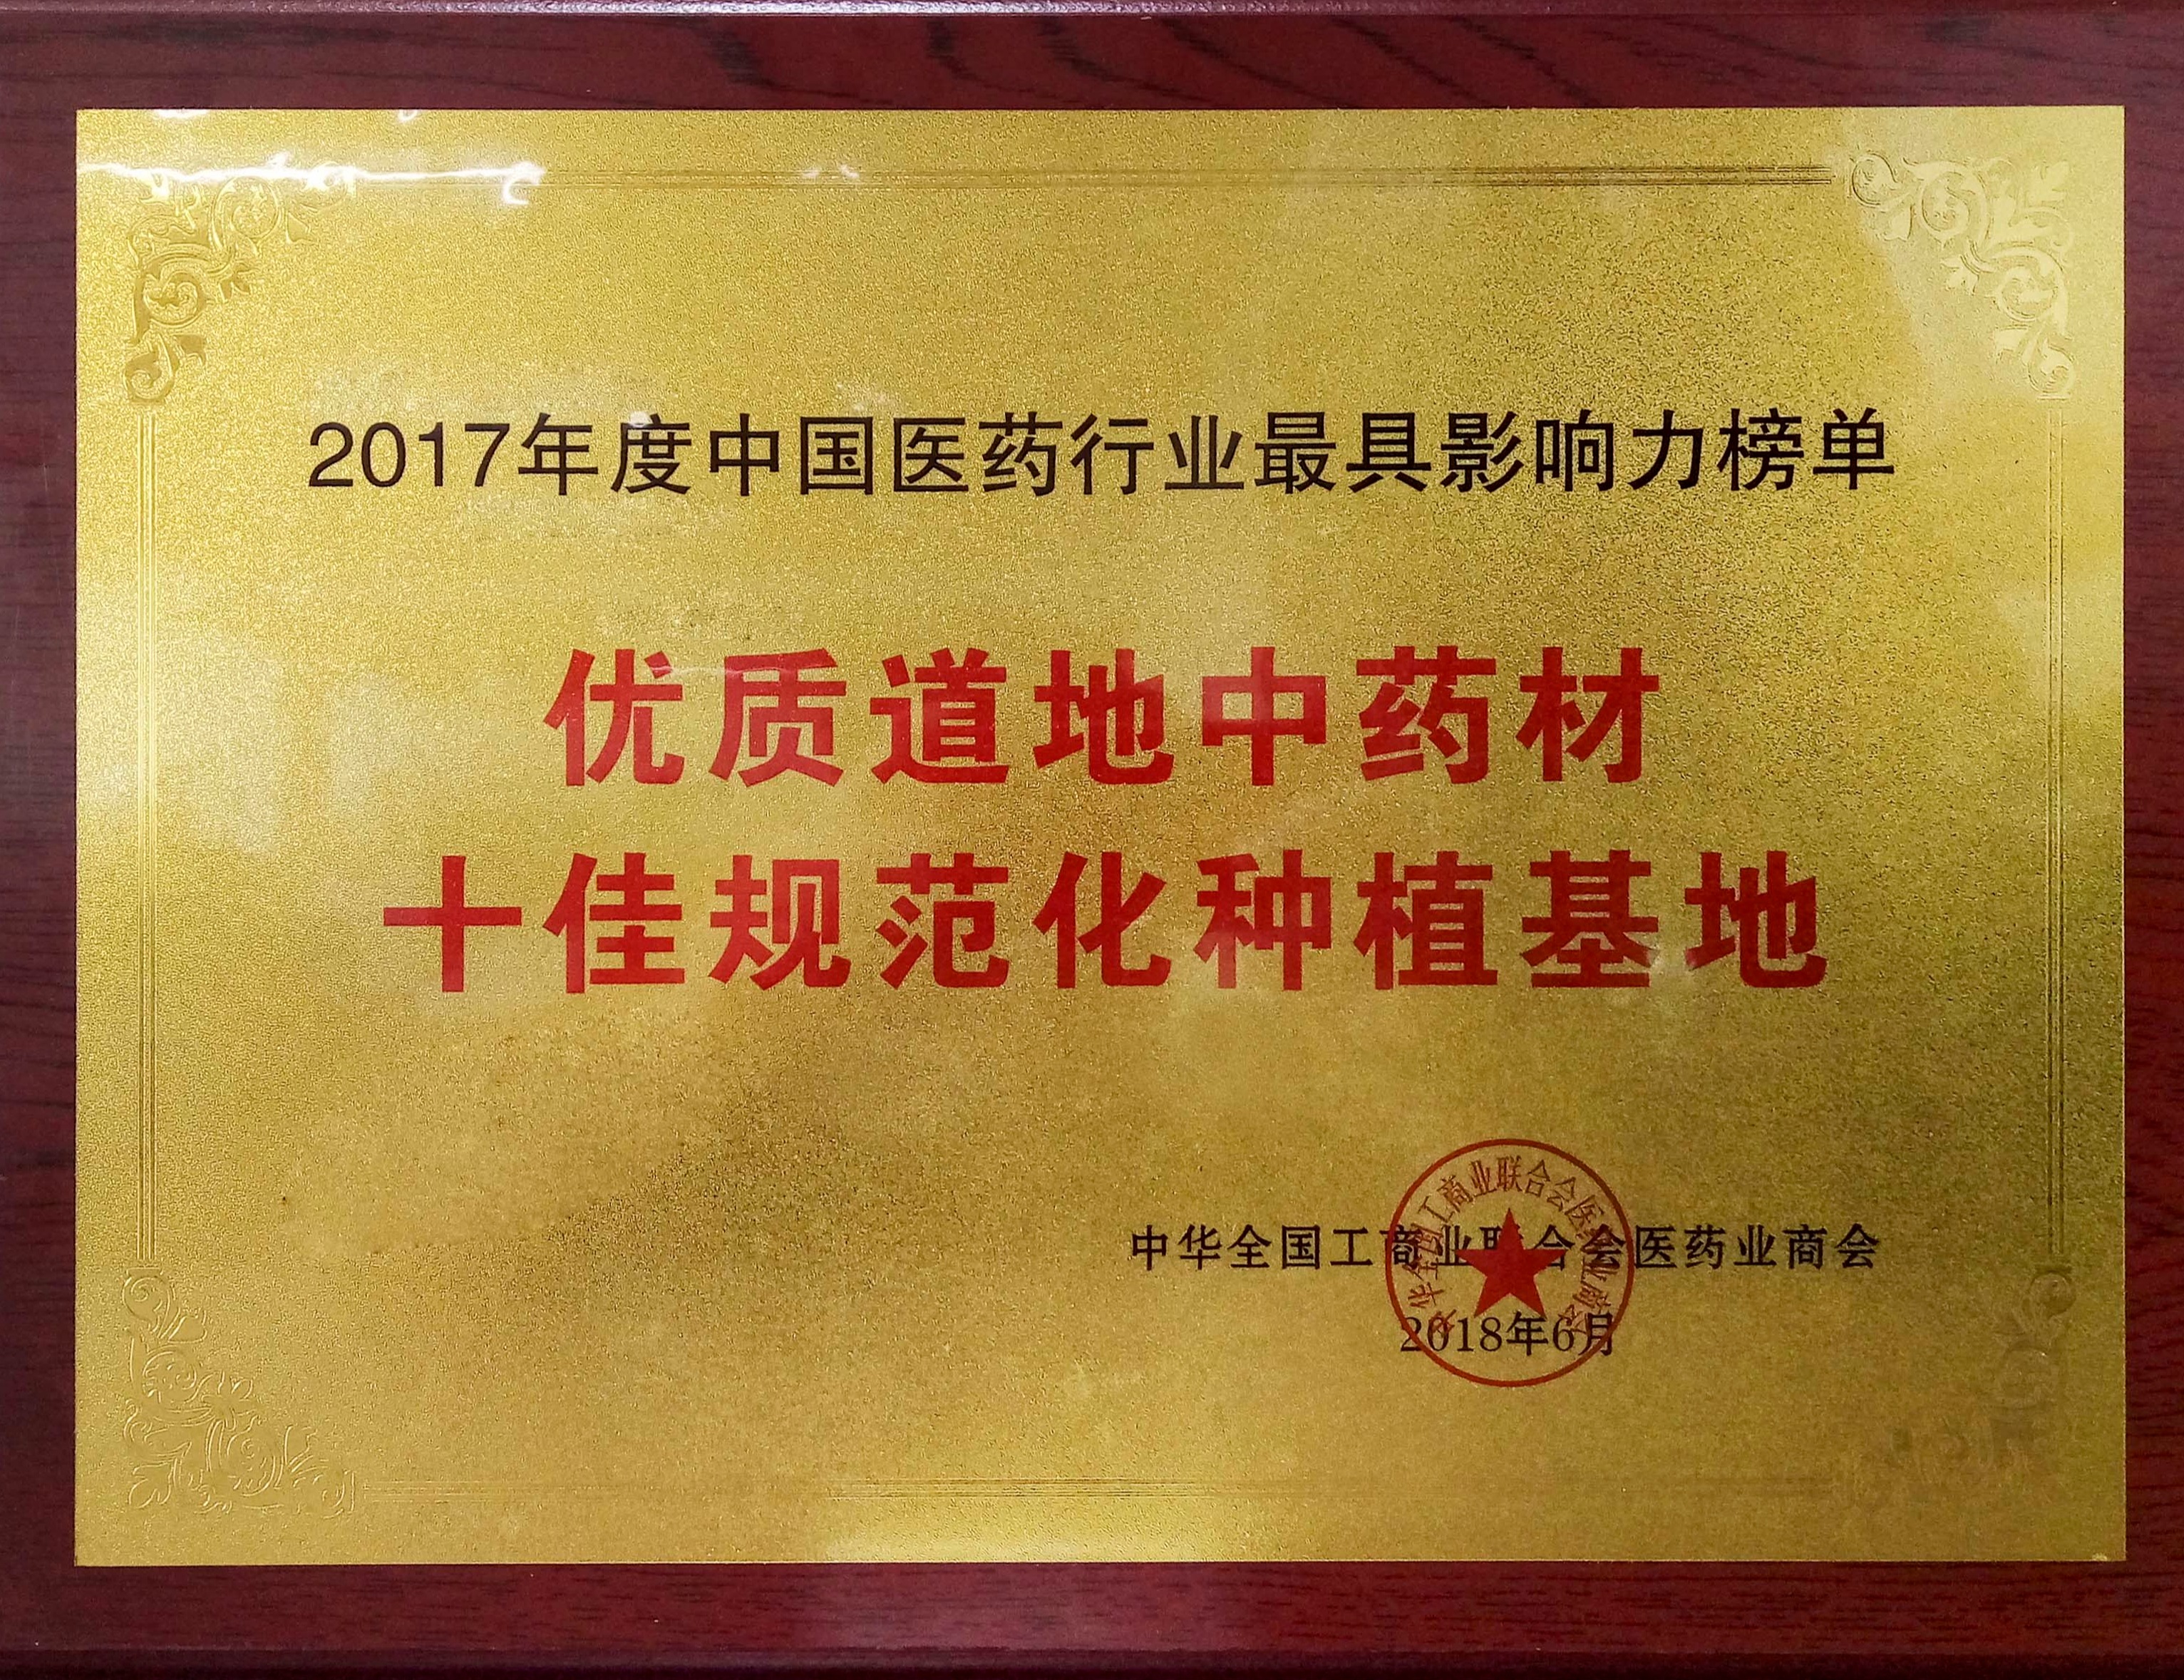 入选“2017年度中国医药行业最具影响力榜单”